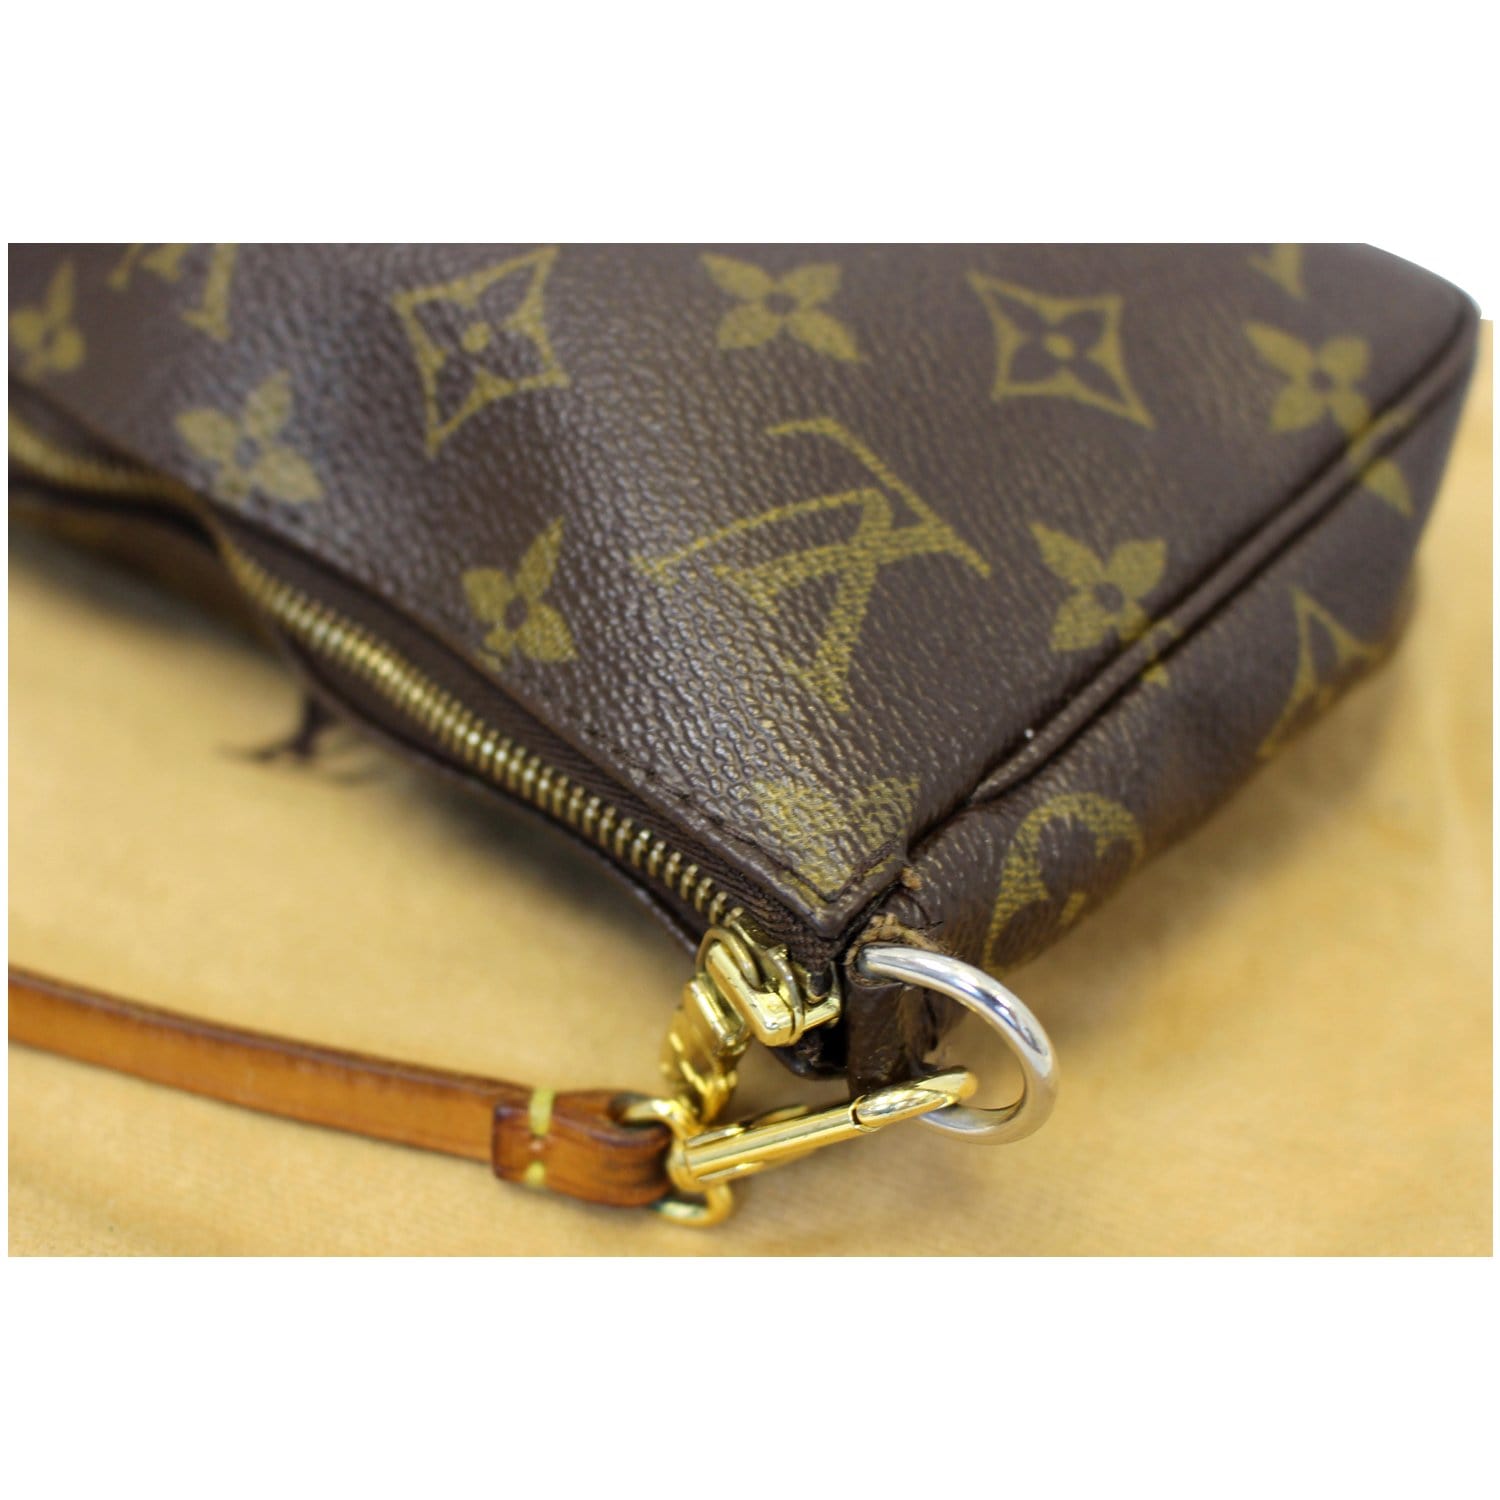 Authentic Louis Vuitton Monogram Accessories Brown Pouch Bag #15913